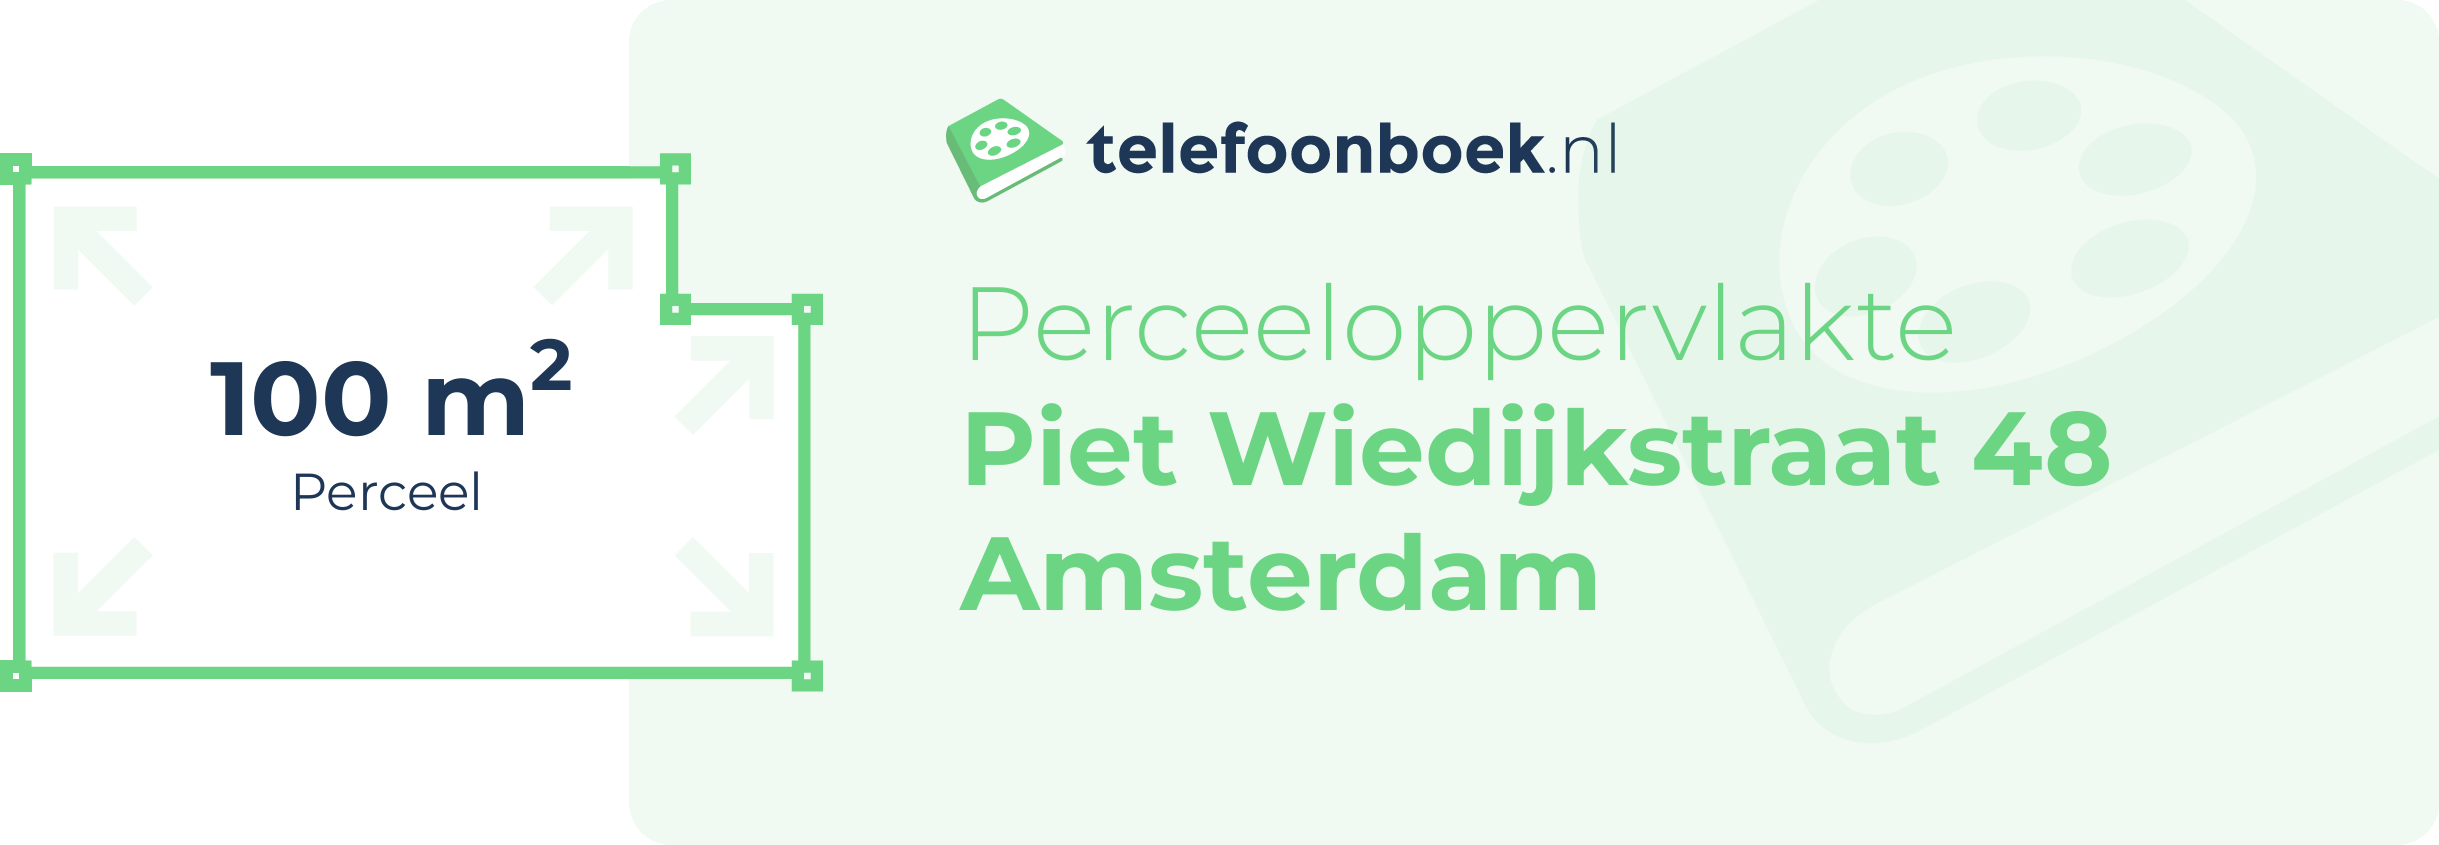 Perceeloppervlakte Piet Wiedijkstraat 48 Amsterdam